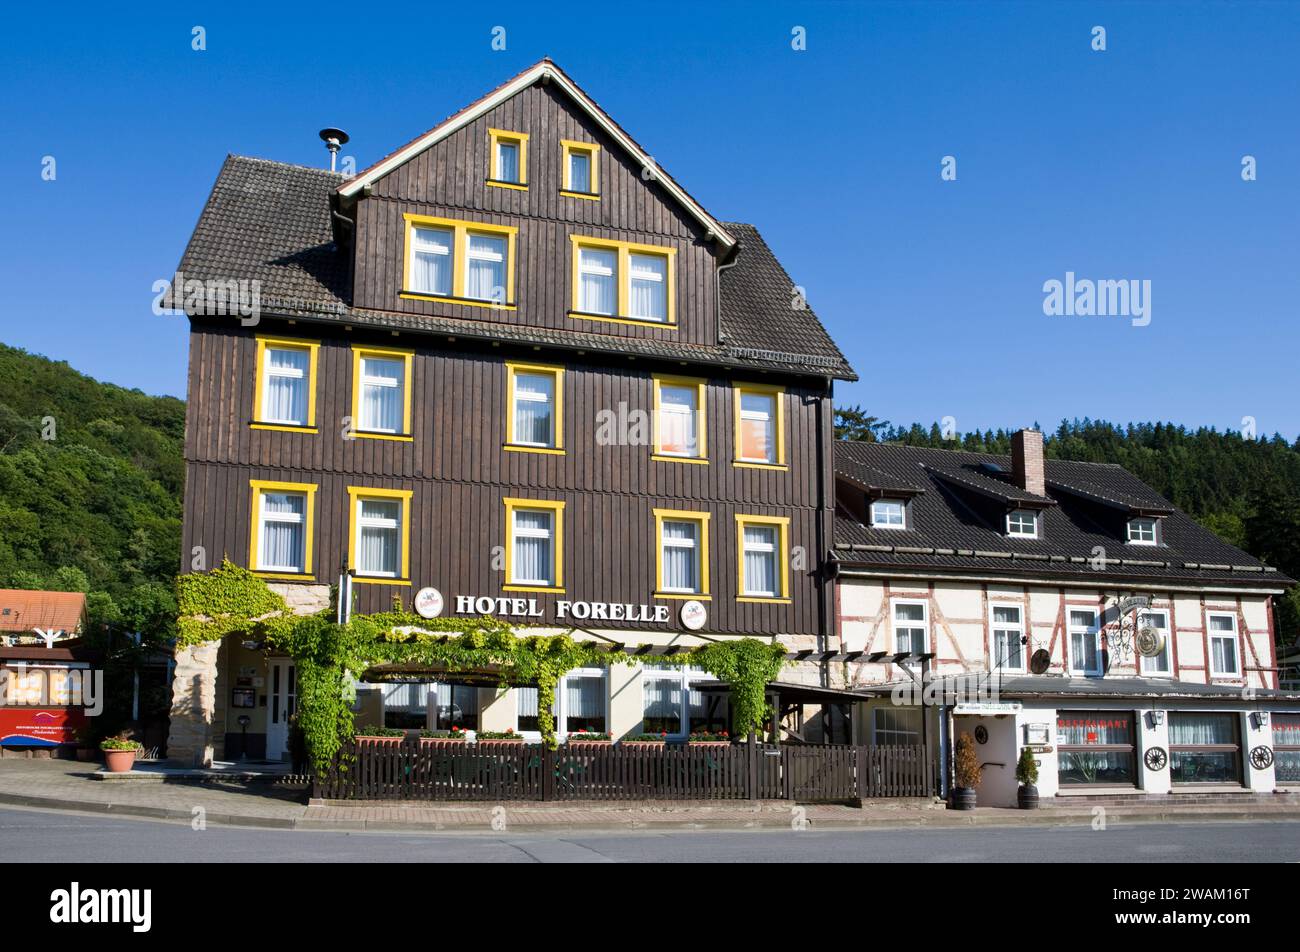 Village de Treseburg, vallée de Bodetal, district de Harz, Saxe-Anhalt, Allemagne, Europe Banque D'Images